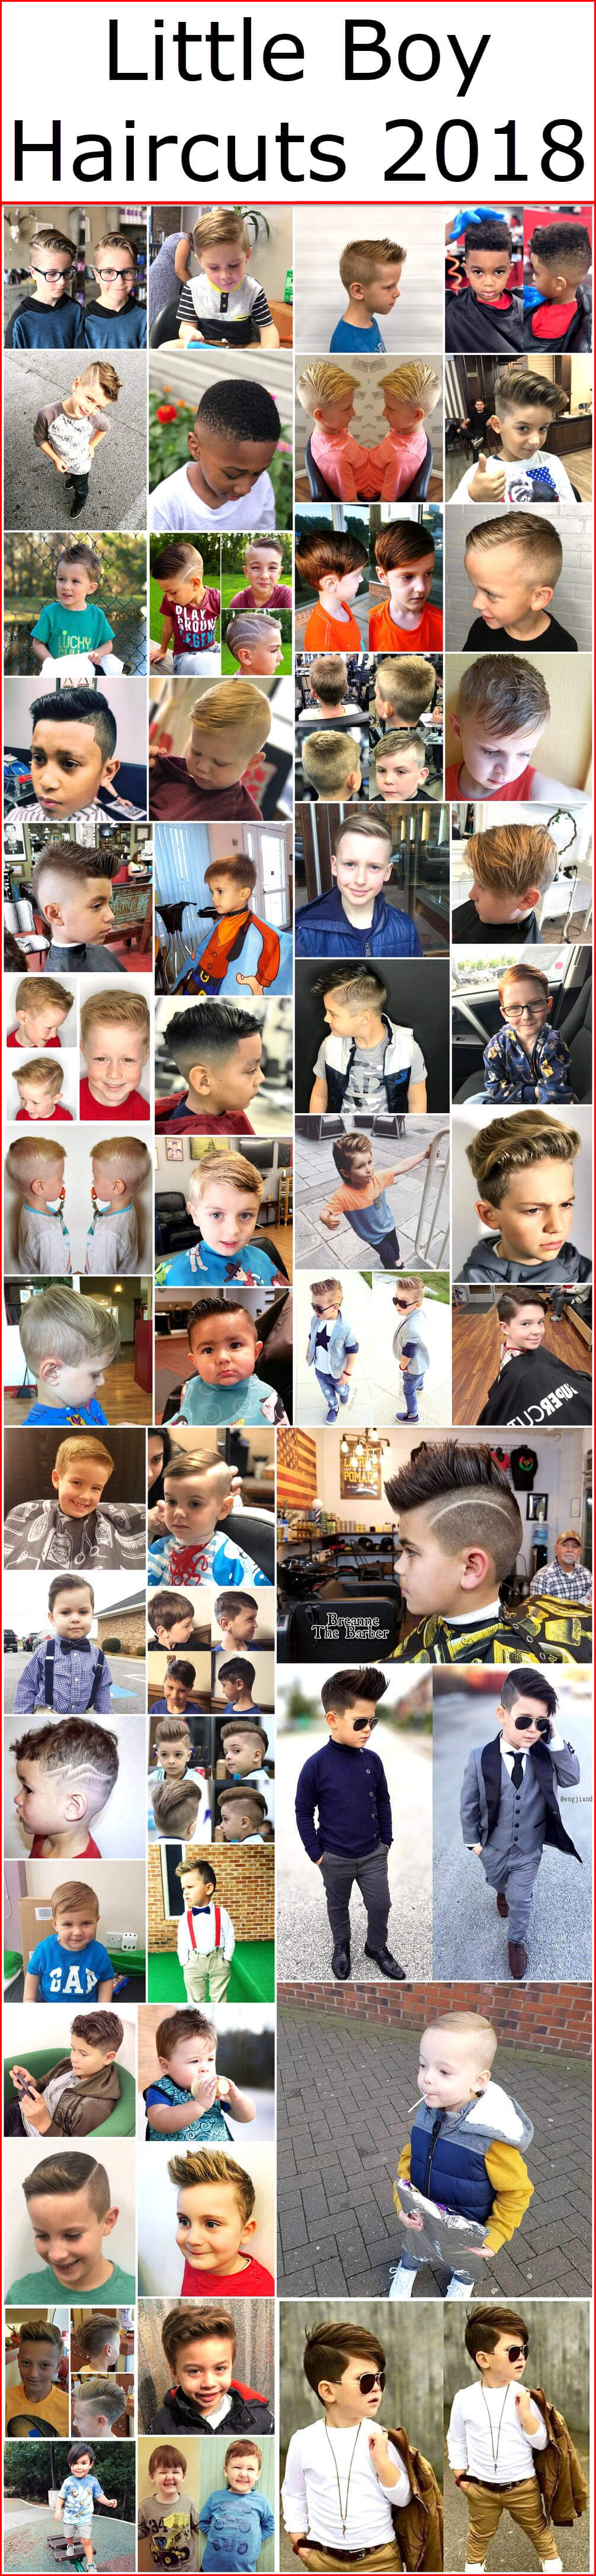 Little Boy Haircuts 2018 Kids Hairstyle Haircut Ideas